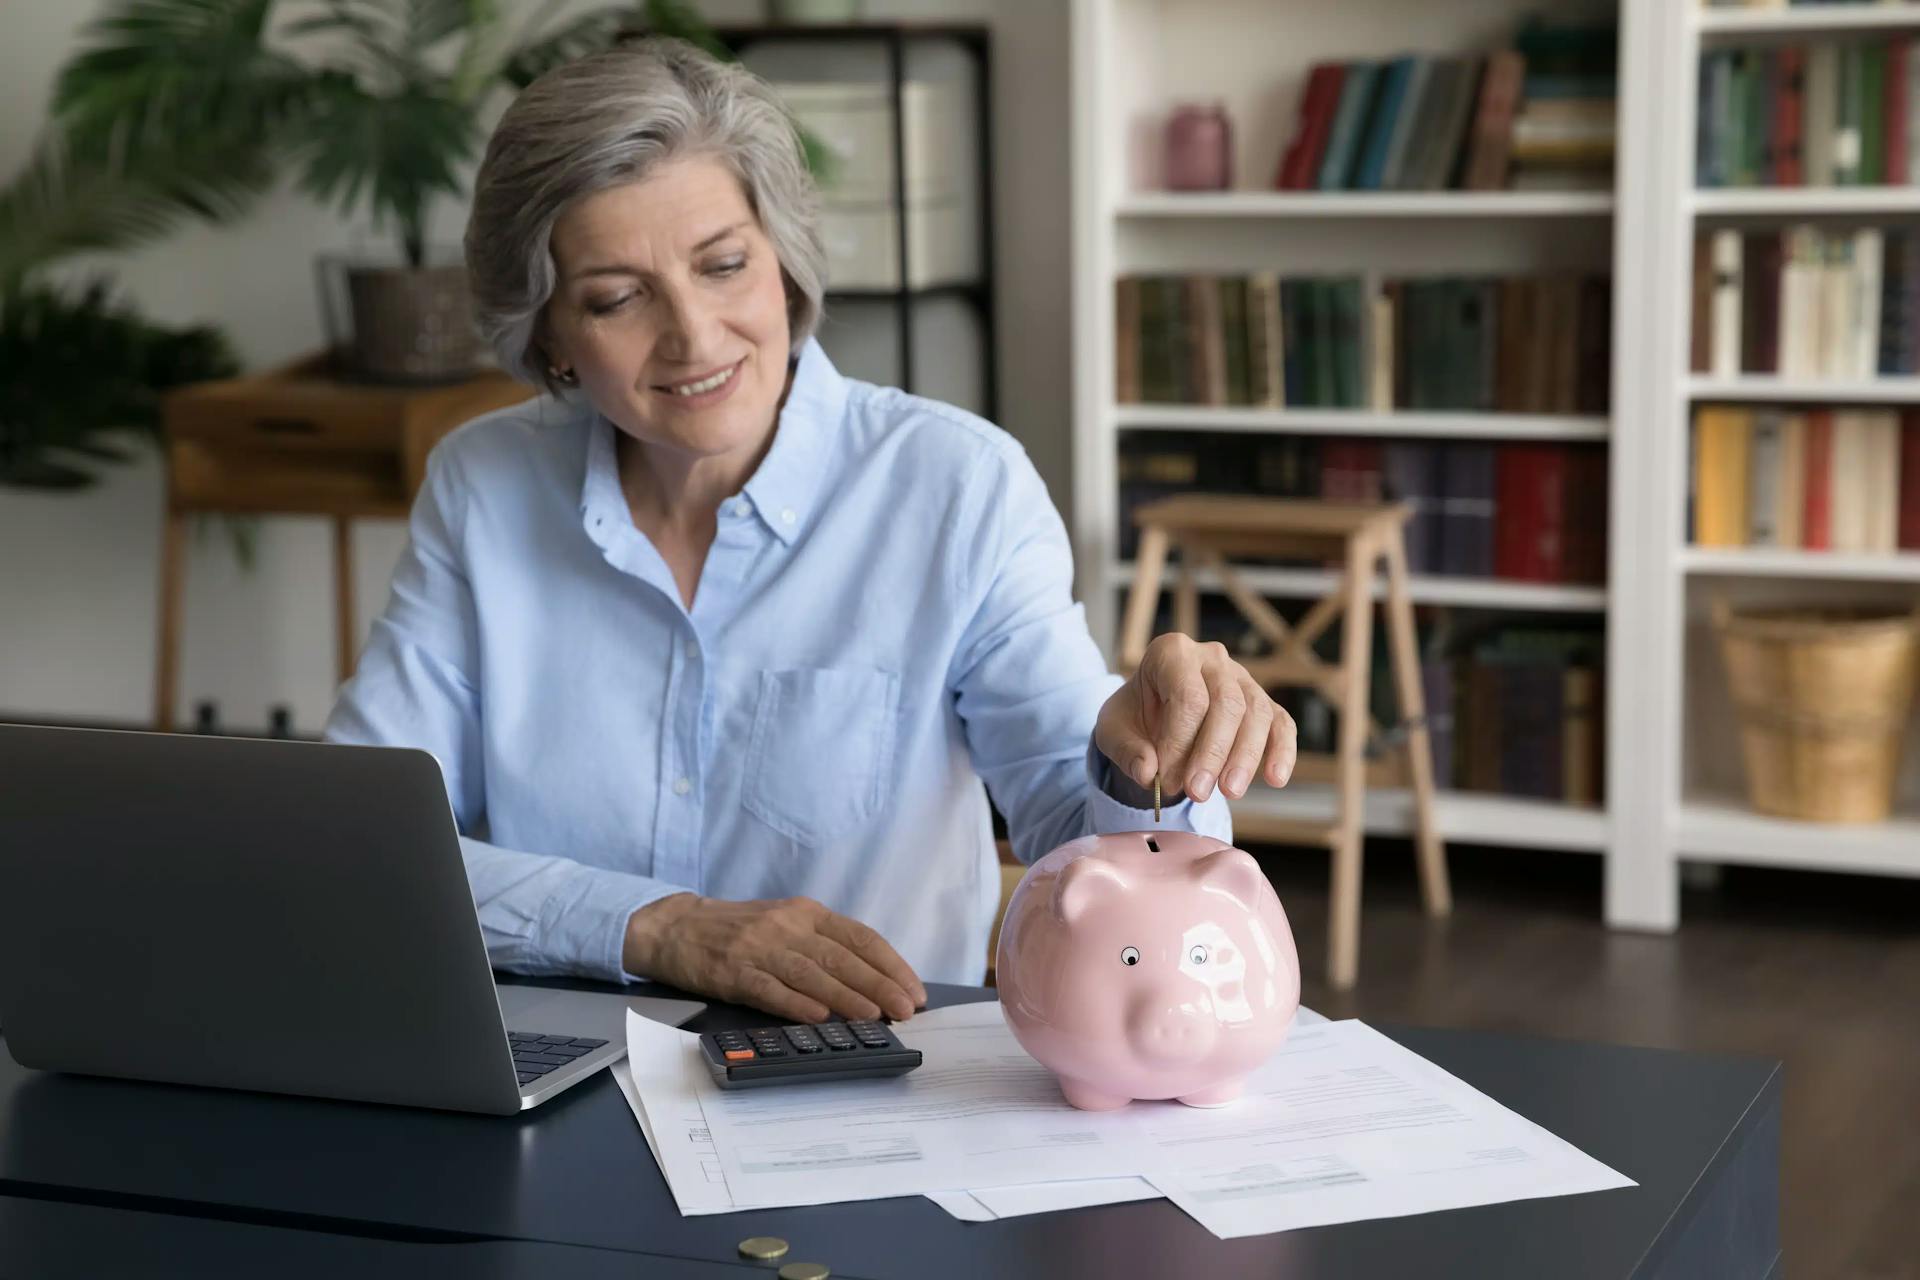 Planejar investimentos para aposentadoria é essencial aos 50 anos